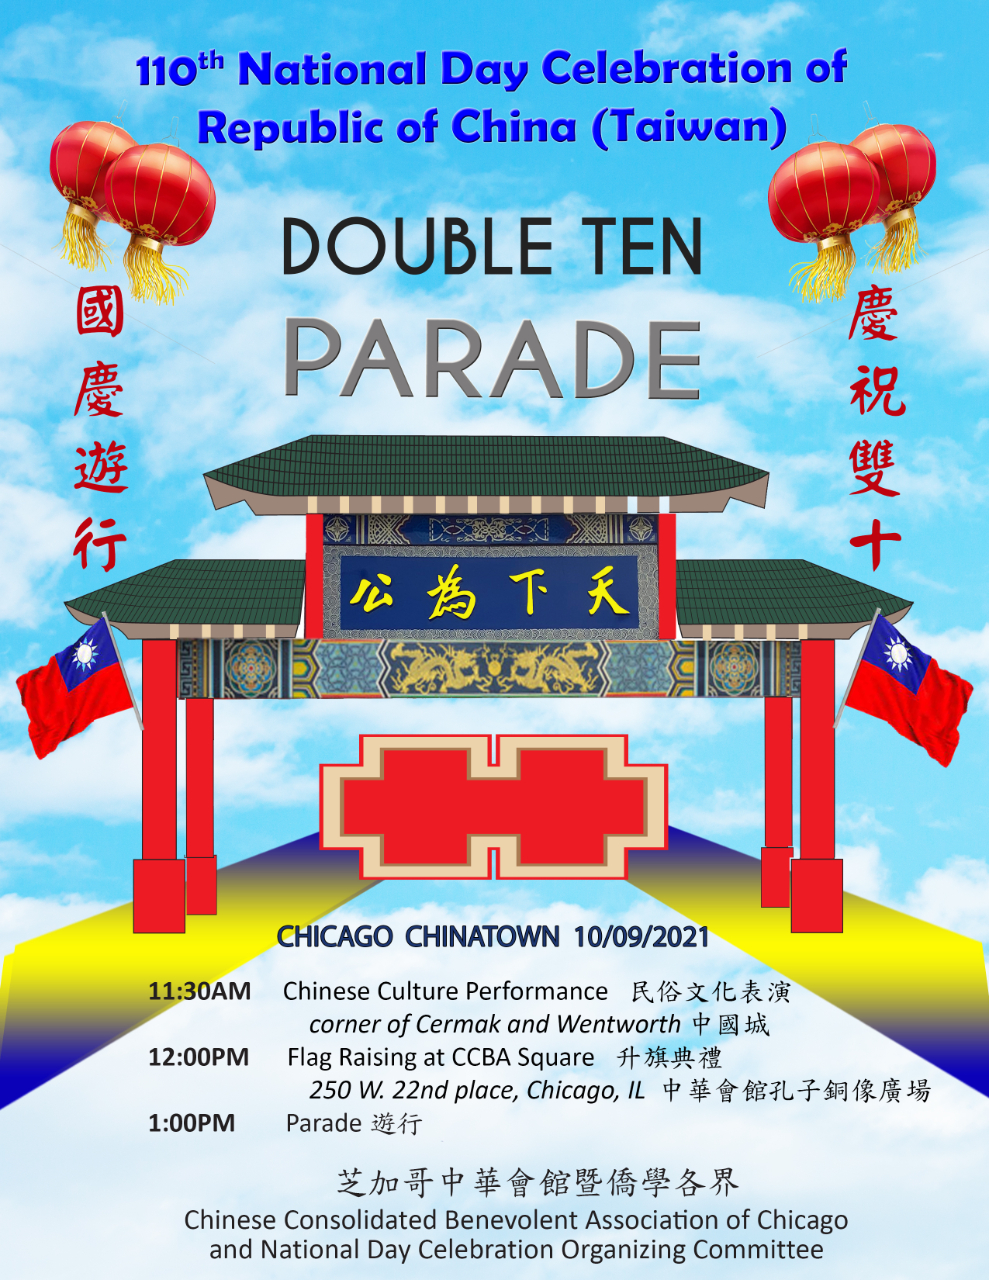 就在10月9日，歡迎大家一起到芝加哥華埠參加雙十國慶遊行
On October 9th, let’s join the Double Ten Parade in celebration of the National Day of the Republic of China(Taiwan) at Chicago Chinatown. Looking forward to seeing you there.